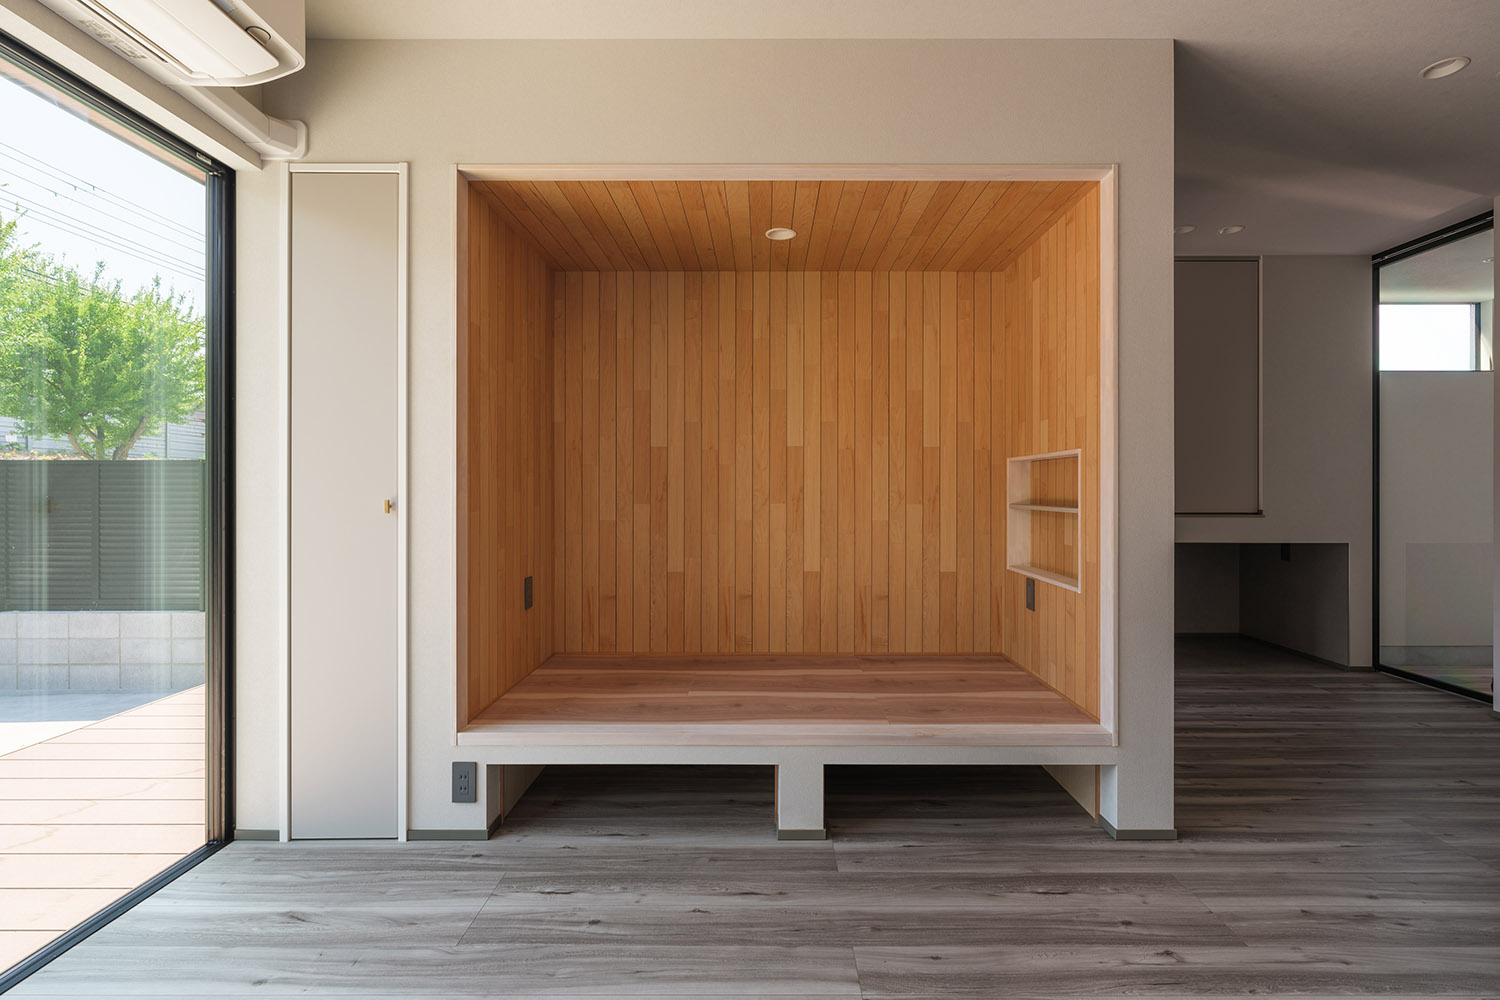 壁をくりぬいてベンチのようにし、全面に木材を使用したLDKにある造作ベンチ・デザイン住宅